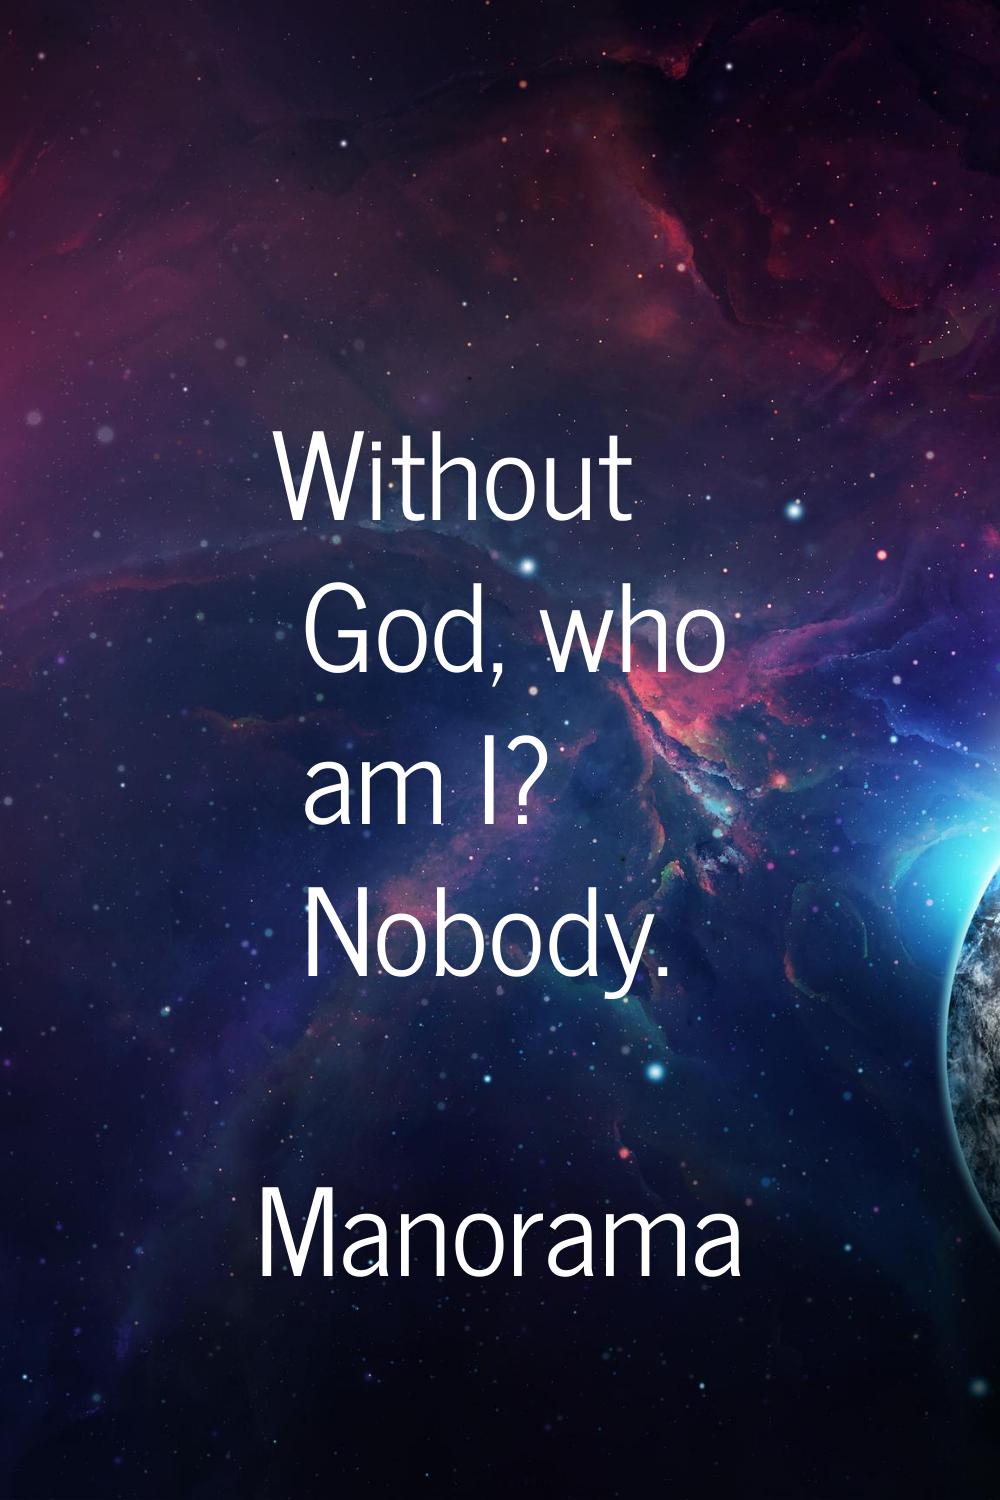 Without God, who am I? Nobody.